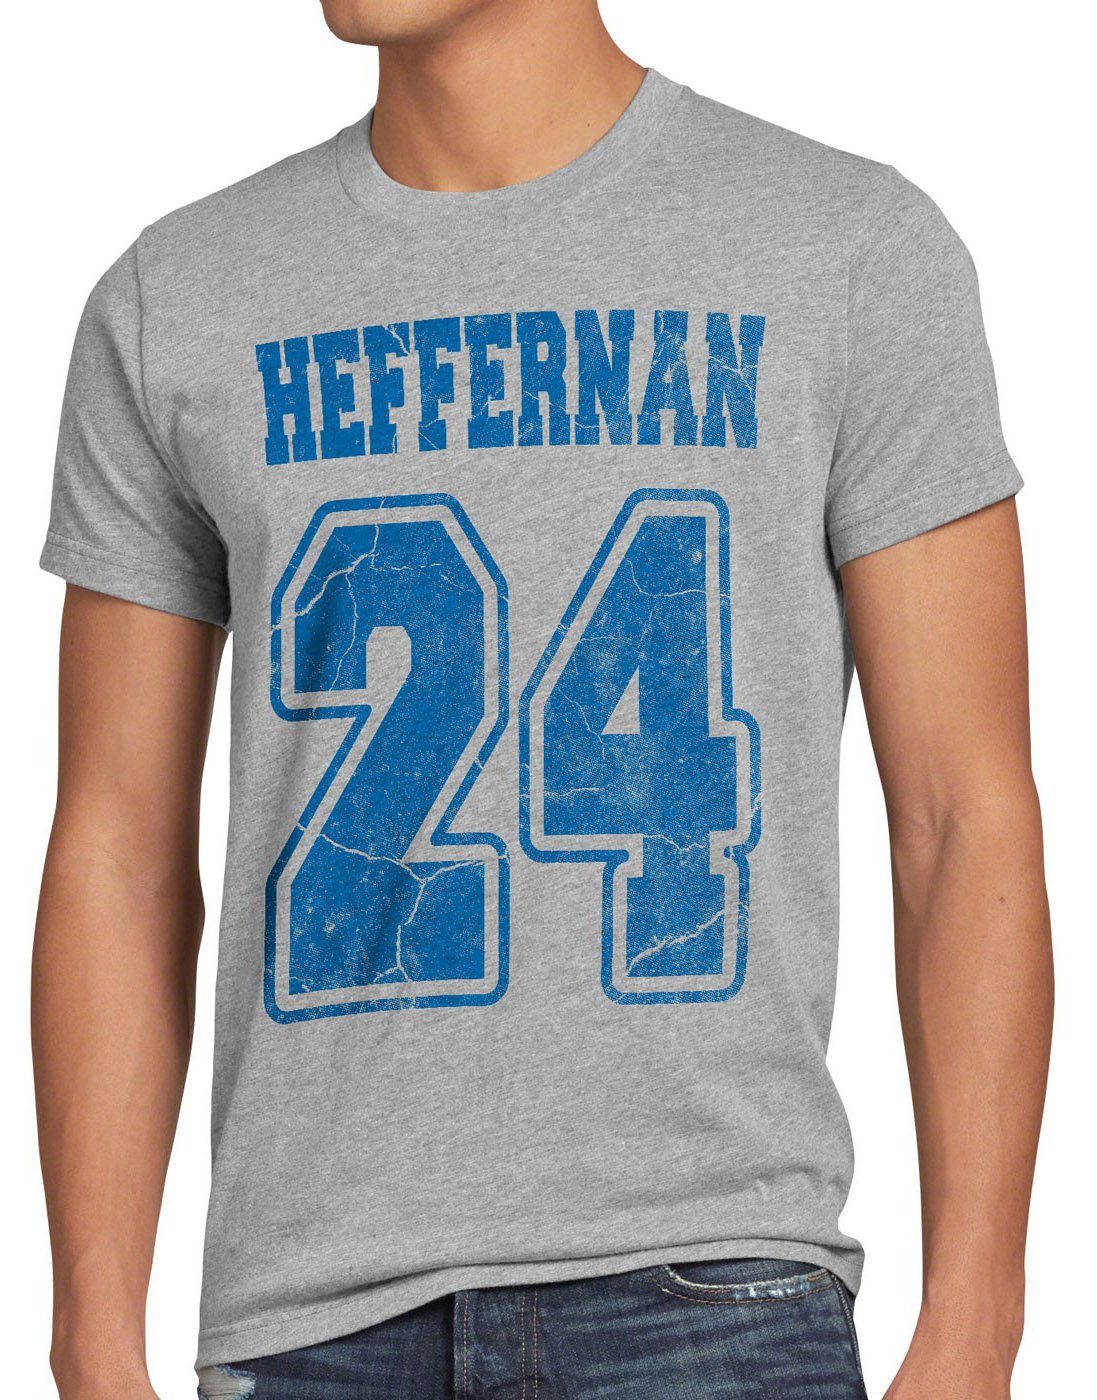 the Print-Shirt 24 Herren doug coopers Heffernan meliert style3 sitcom grau of IPS spooner T-Shirt queens king